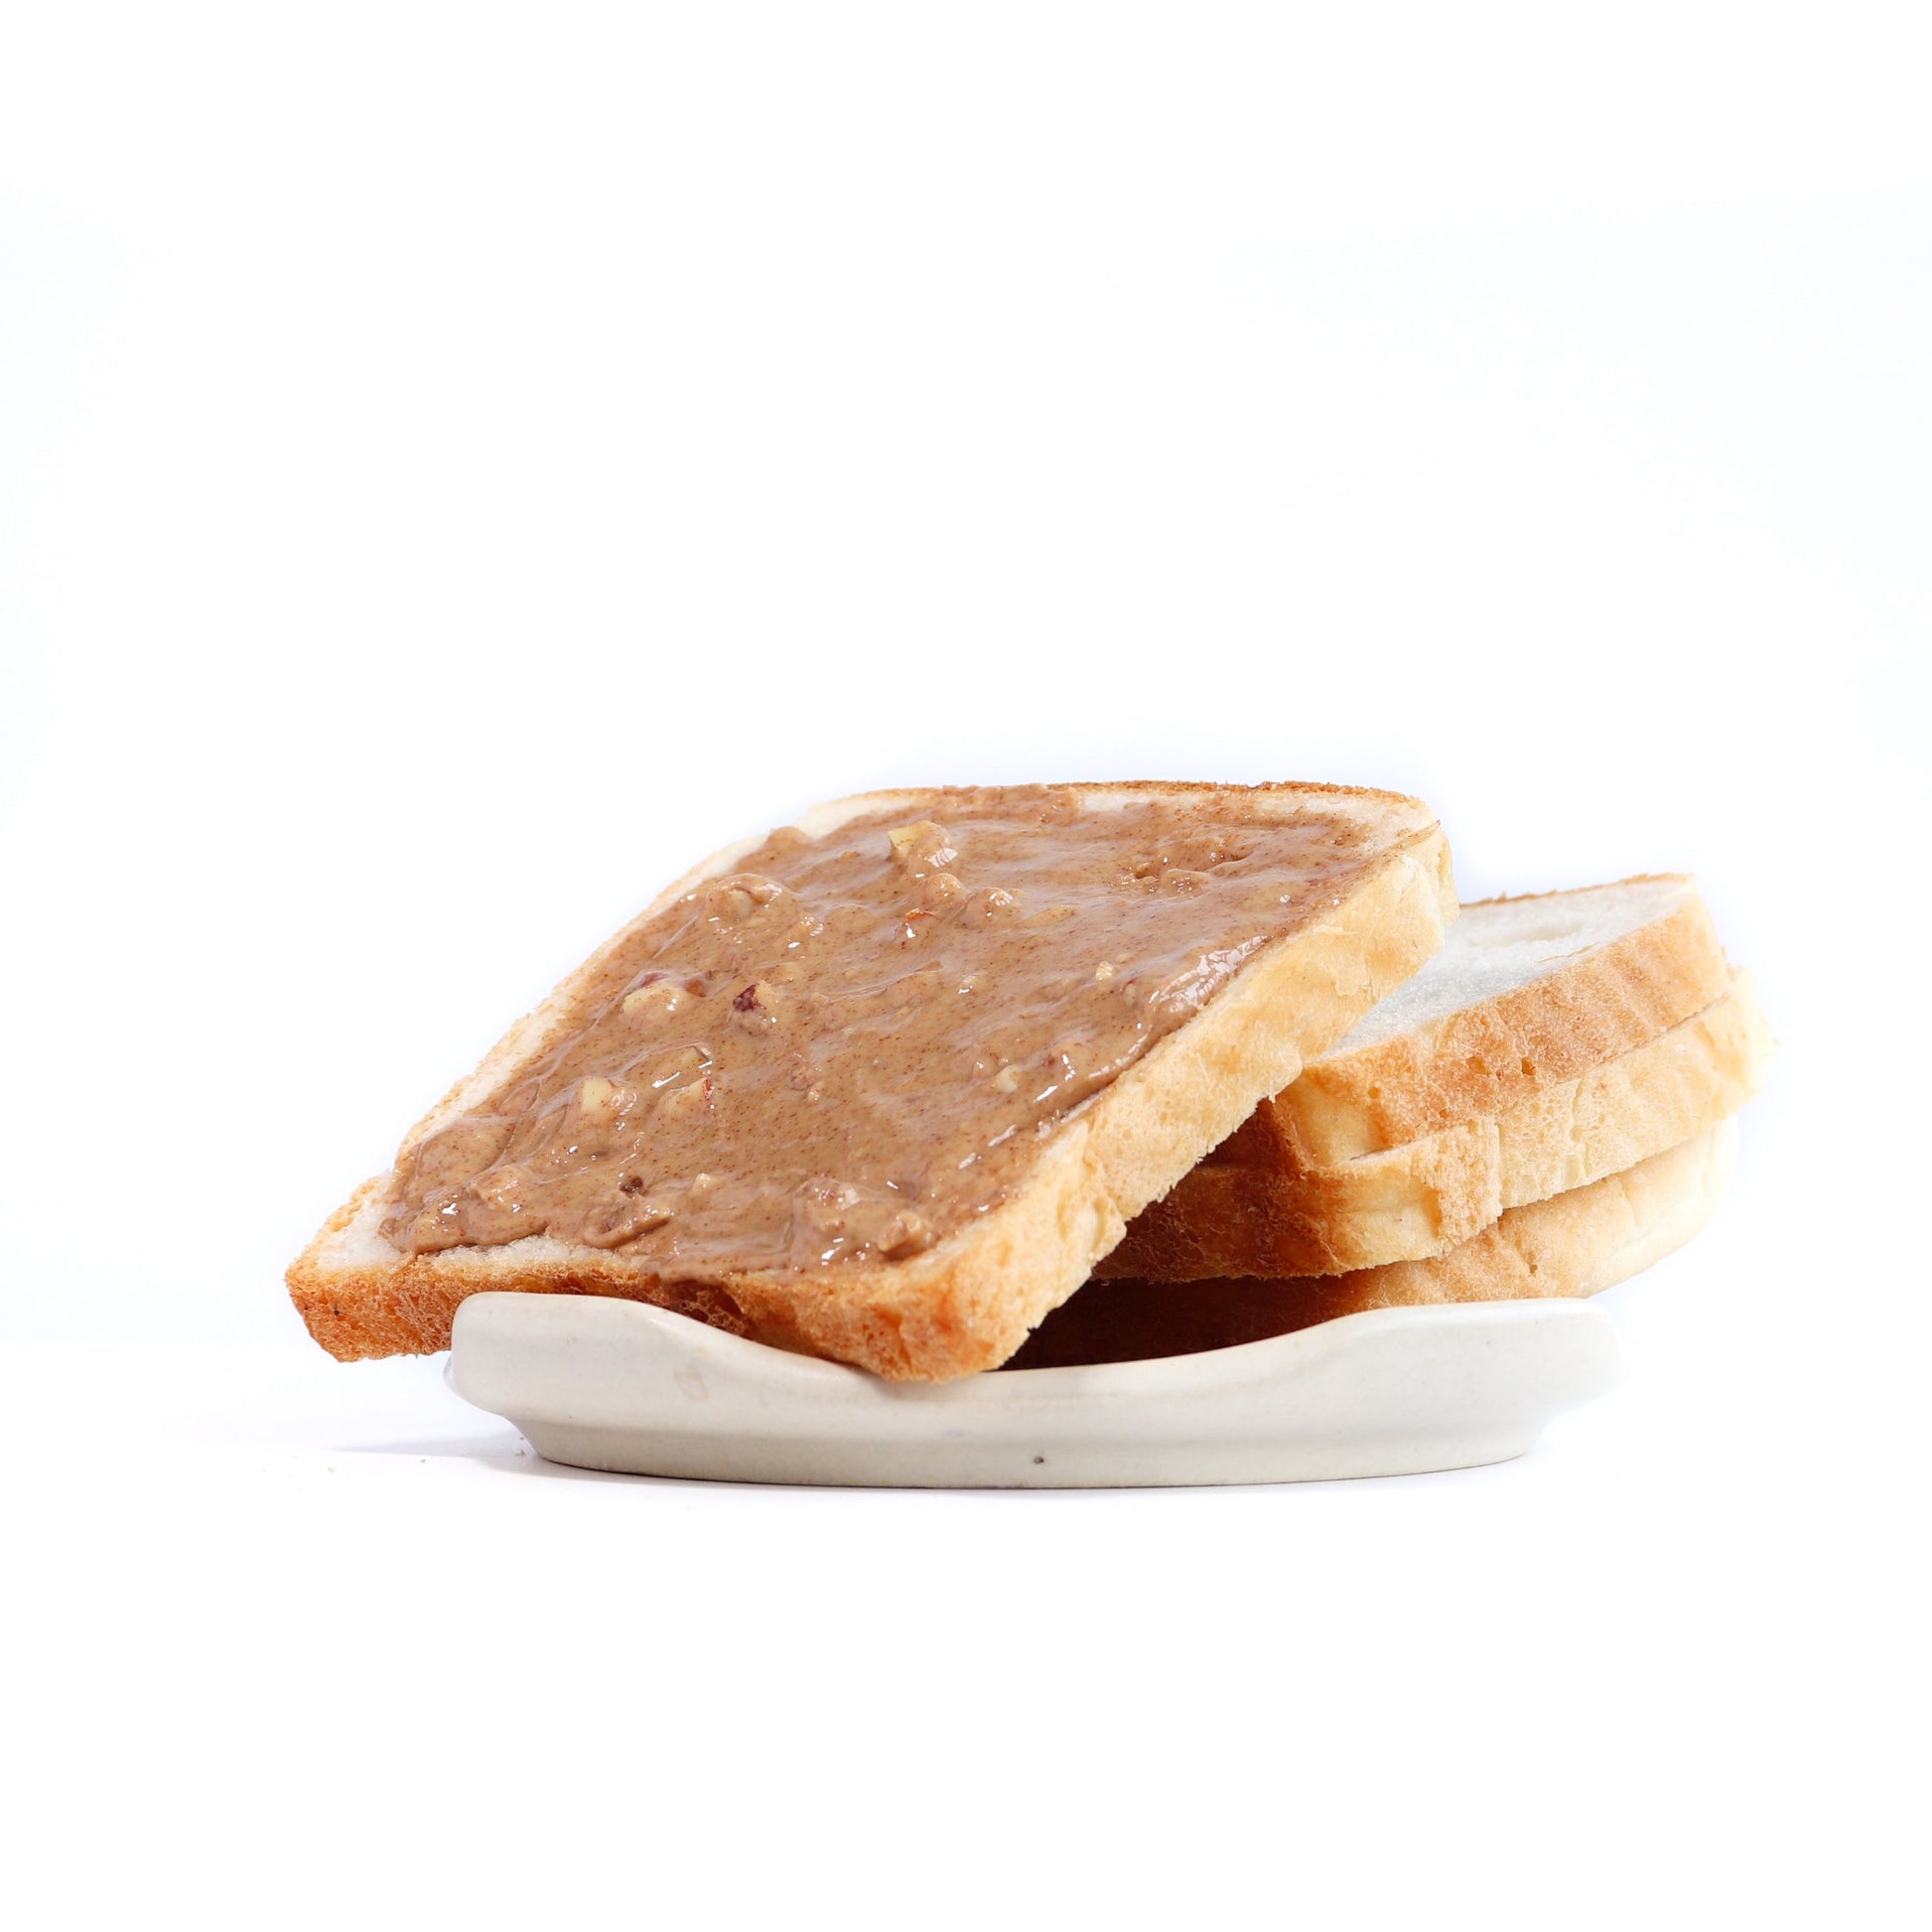 Crunchy Almond Butter, 300g - Tassyam Organics